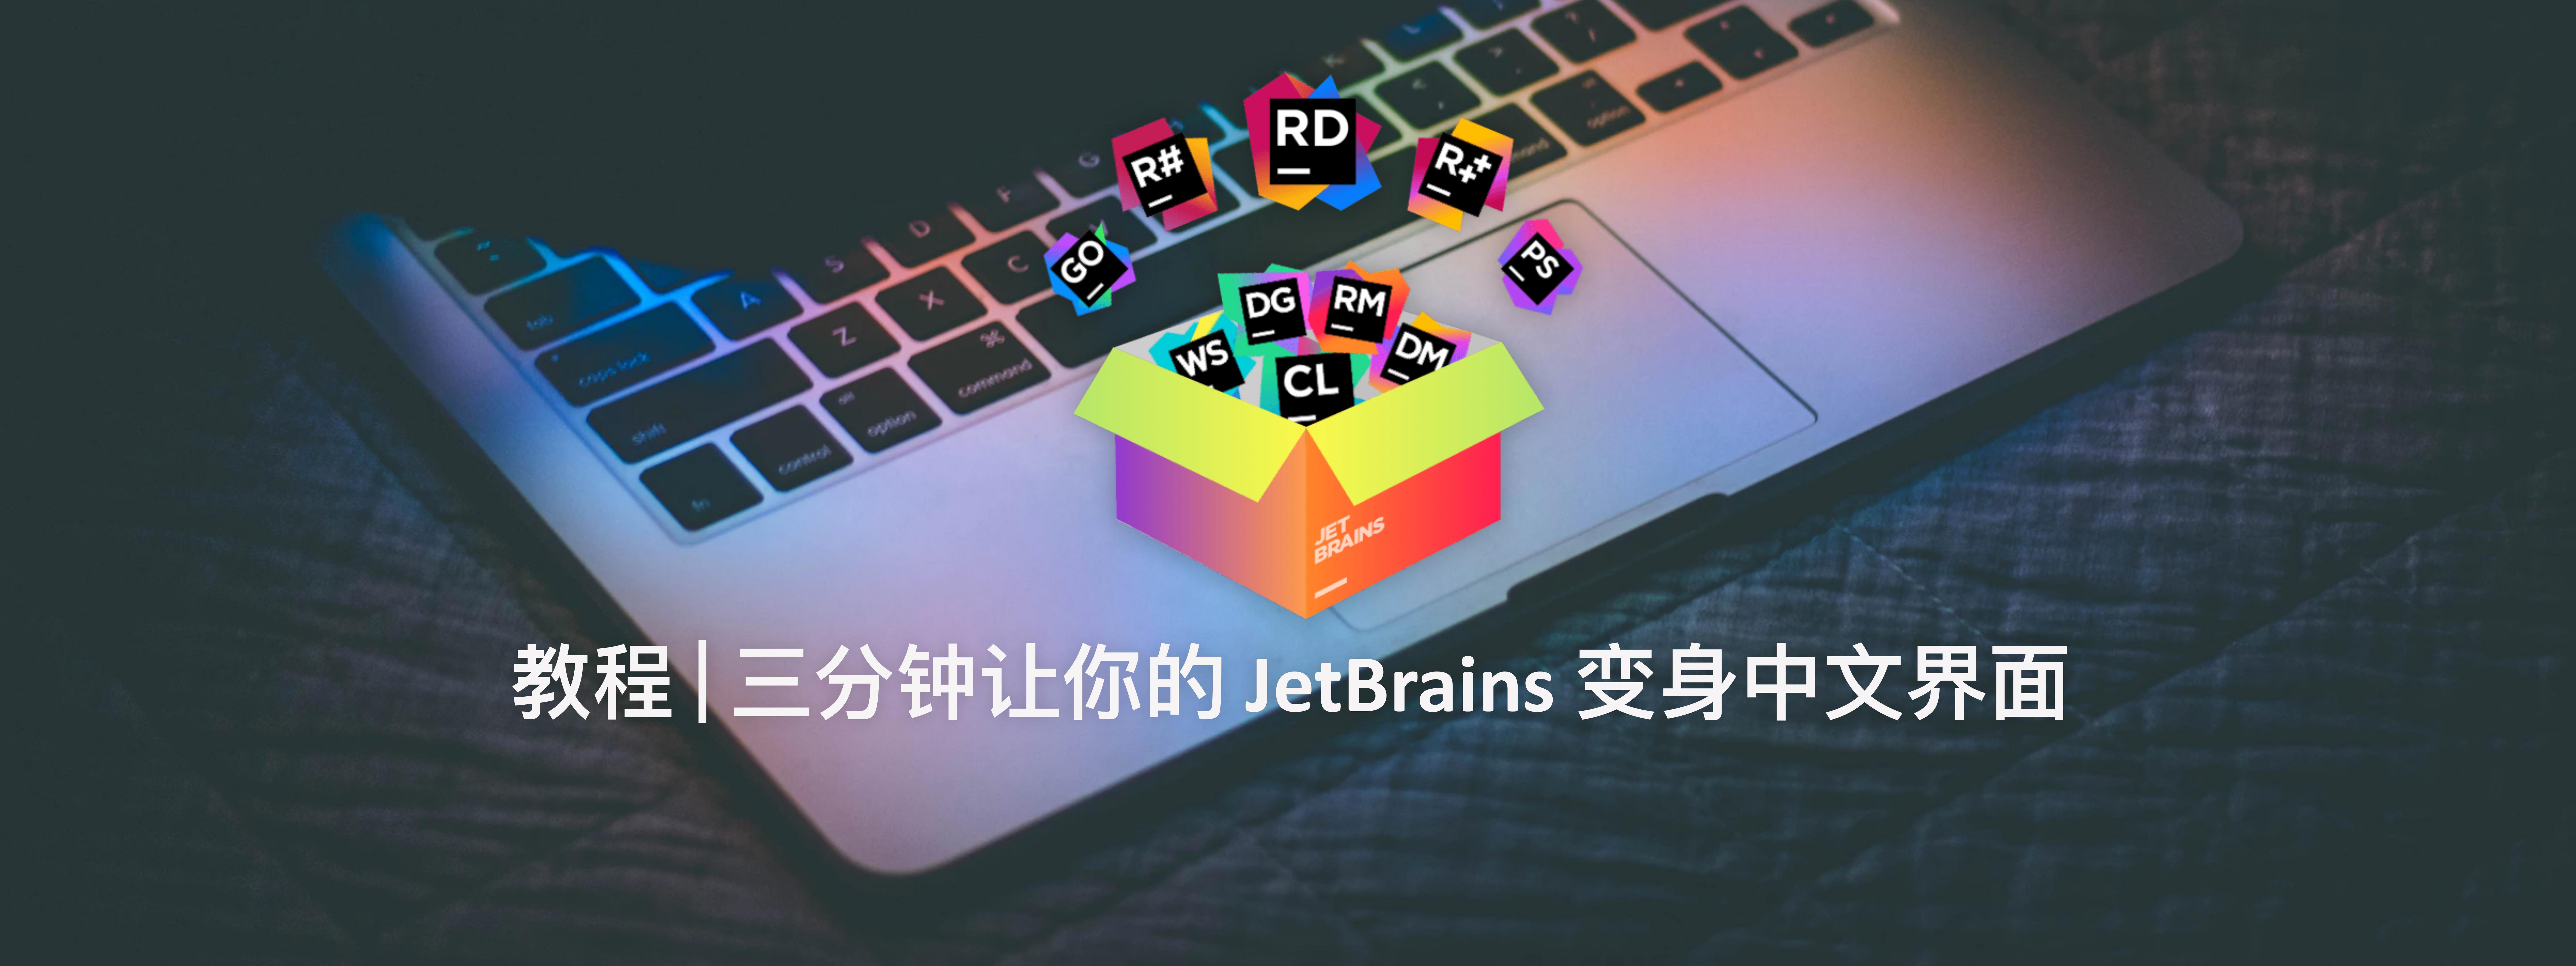 只需三分钟让你的 JetBrains 变身中文界面